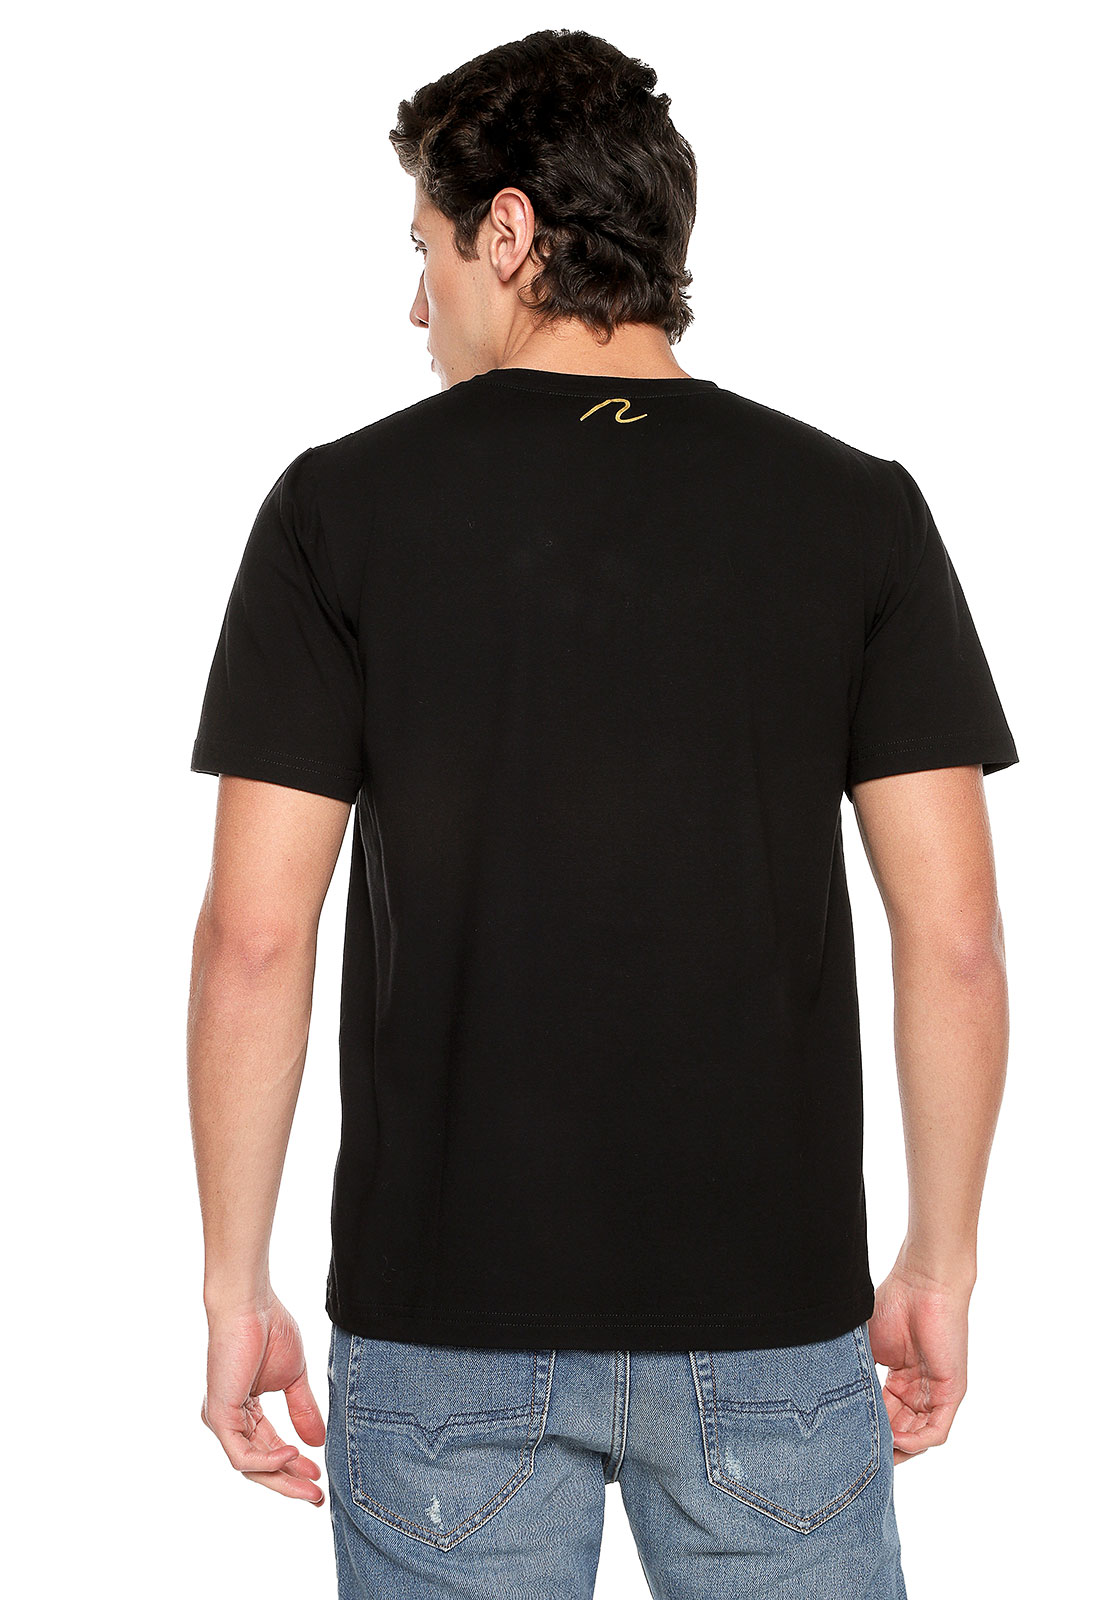 Camiseta para hombre negra Camello - Rachid Style